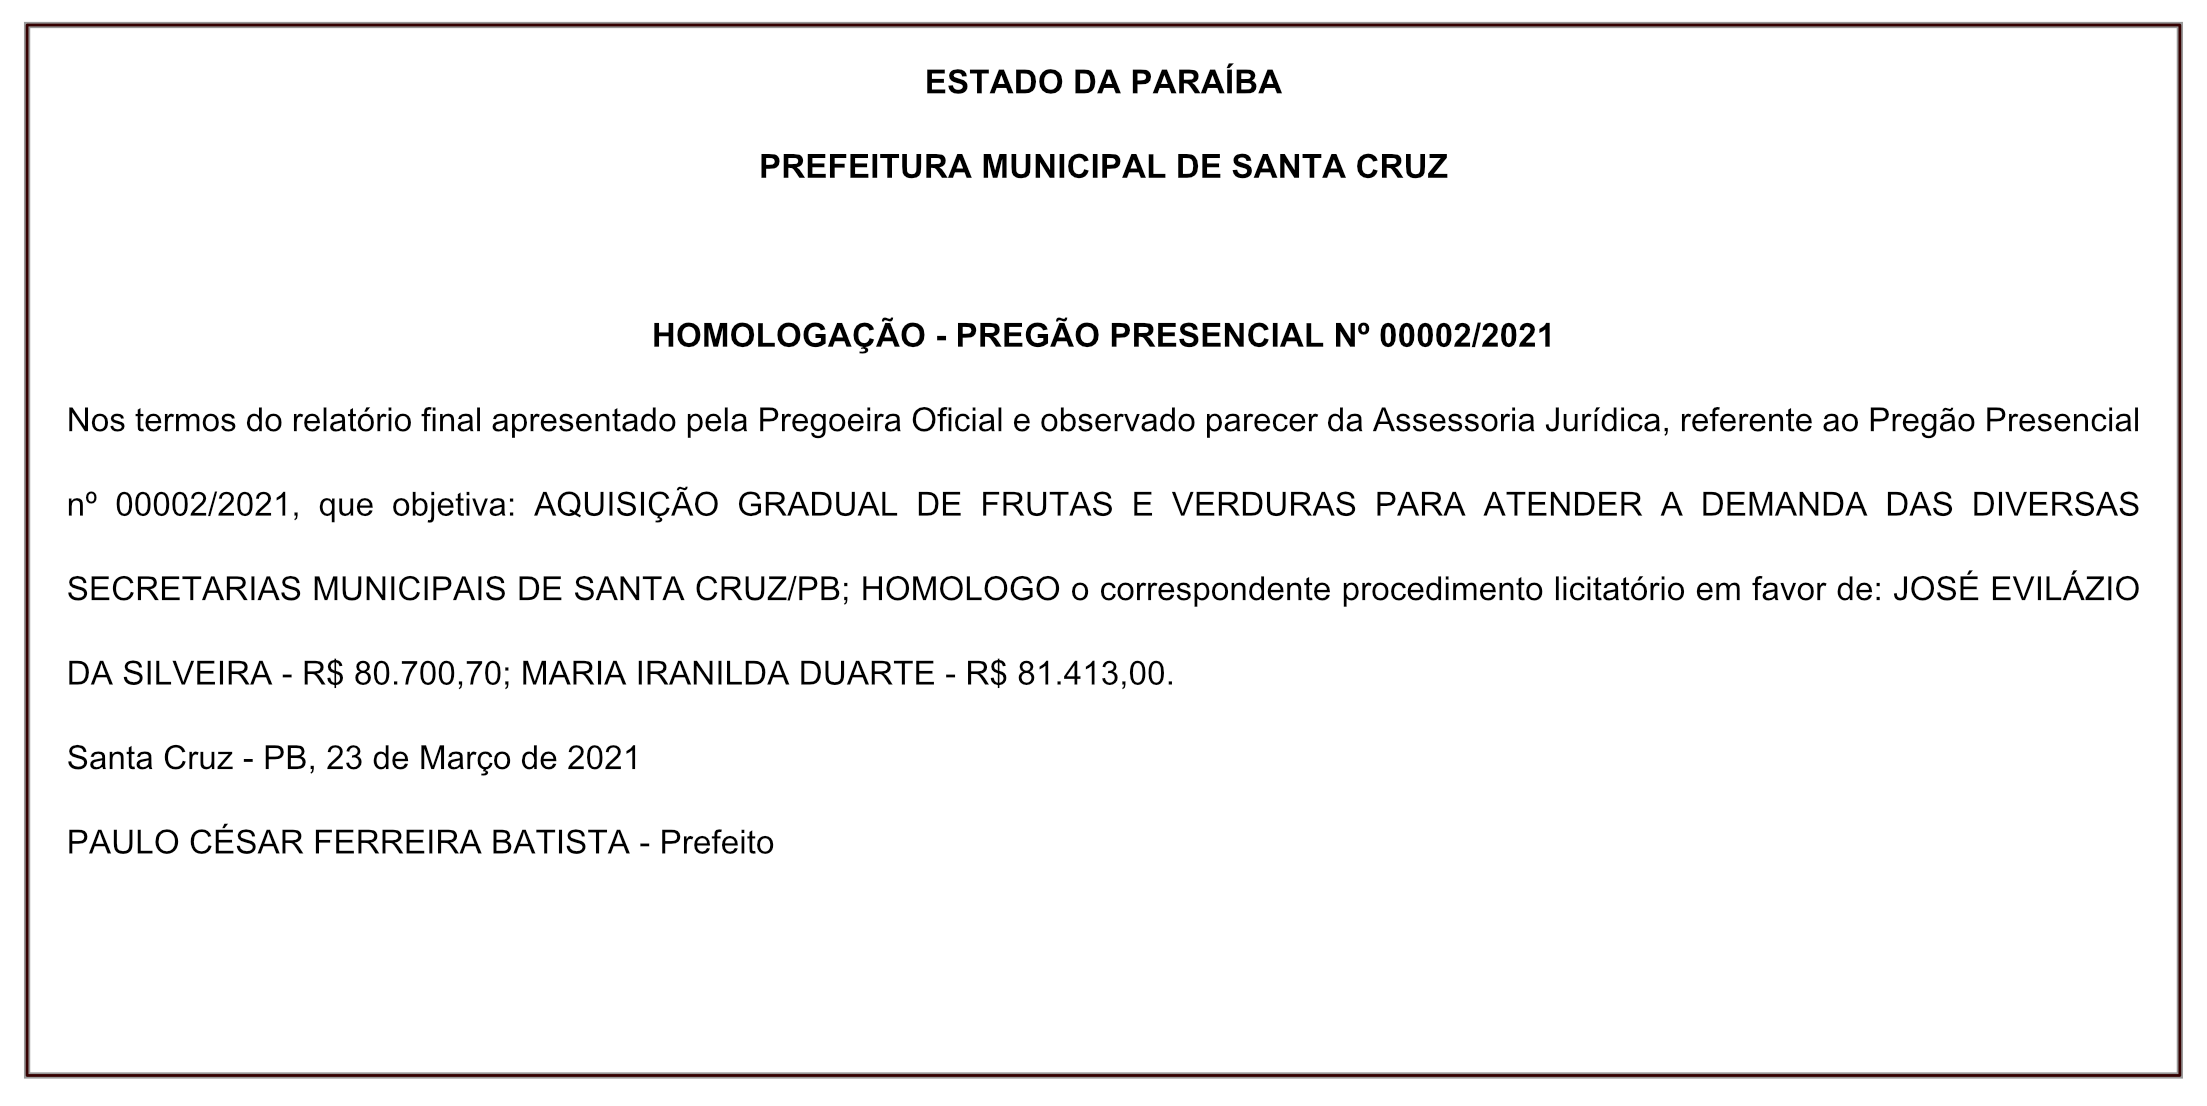 PREFEITURA MUNICIPAL DE SANTA CRUZ – HOMOLOGAÇÃO – PREGÃO PRESENCIAL Nº 00002/2021